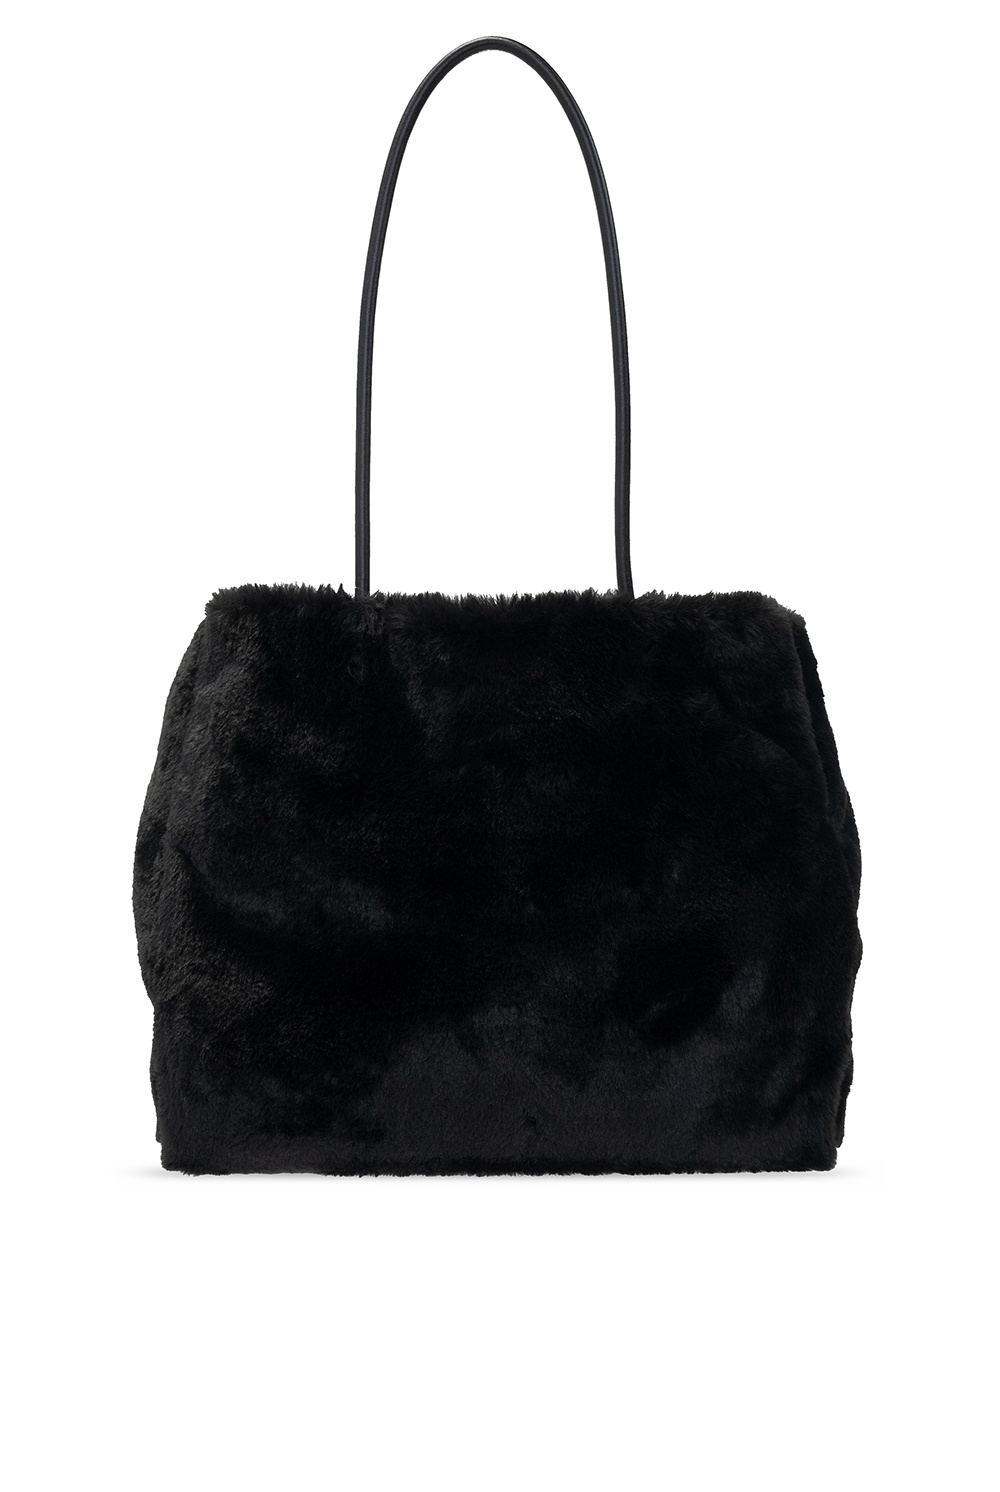 Kate Spade Fur shopper bag | Women's Bags | Vitkac